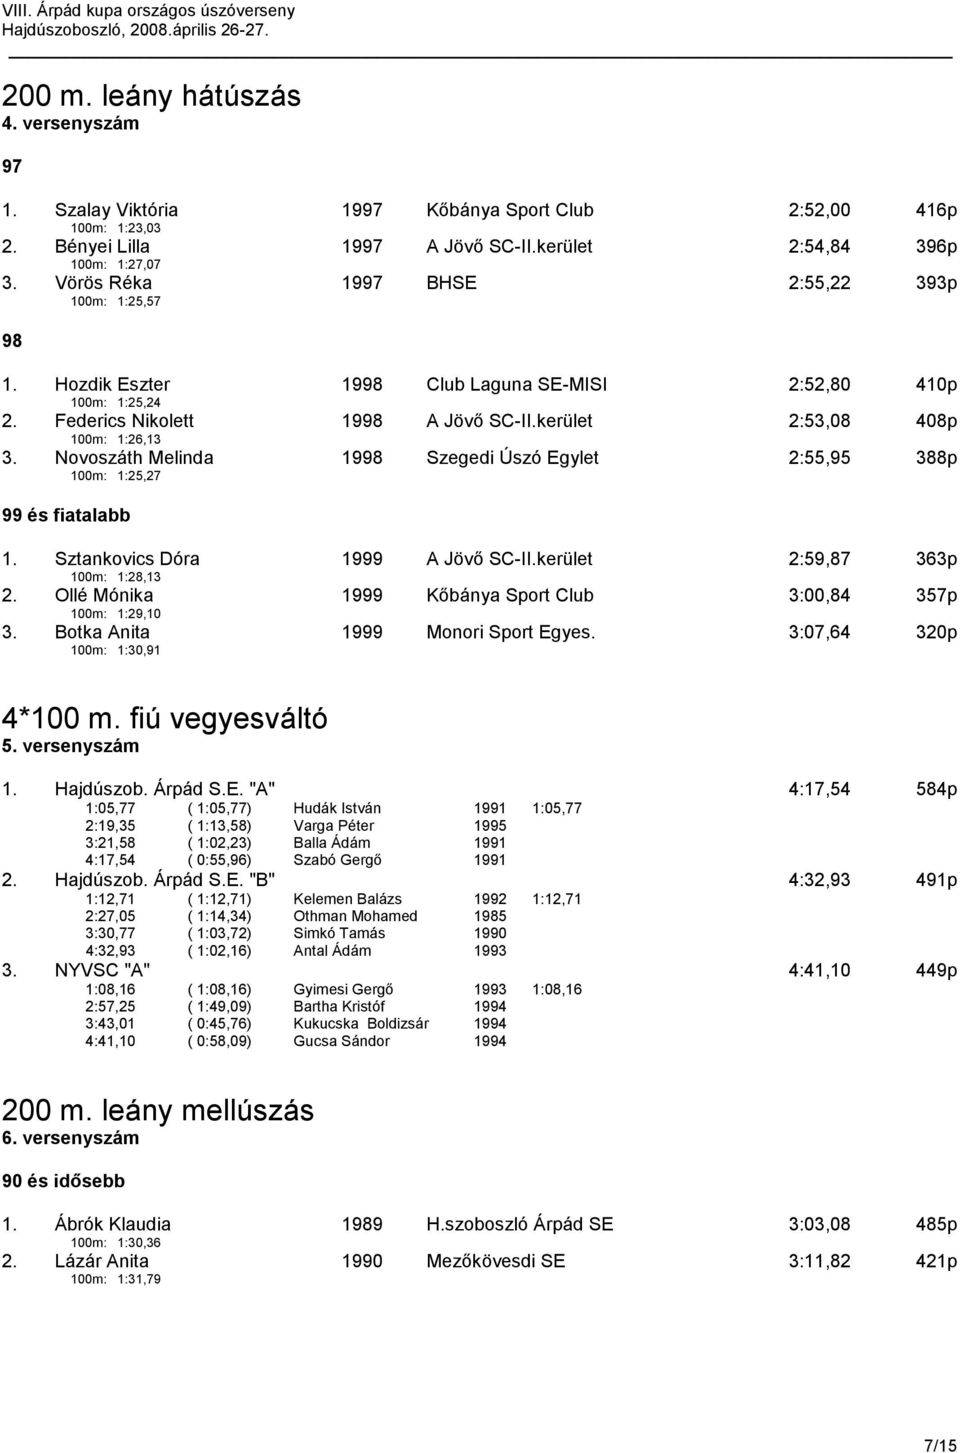 Novoszáth Melinda 100m: 1:25,27 19 Szegedi Úszó Egylet 2:55, 388p 1. Sztankovics Dóra 100m: 1:28,13 1999 A Jövő SC-II.kerület 2:59,87 363p 2.